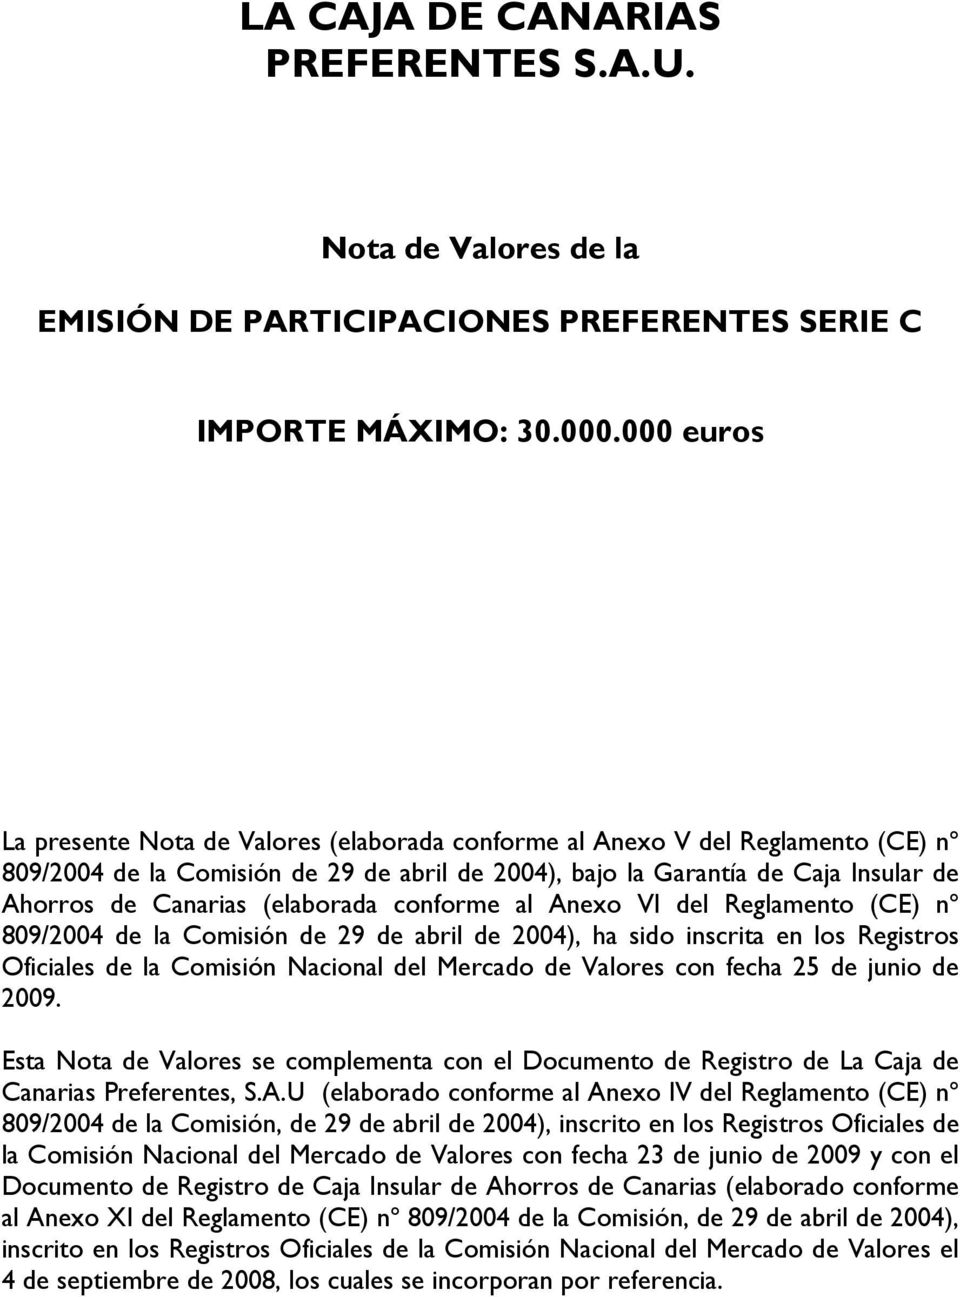 (elaborada conforme al Anexo VI del Reglamento (CE) nº 809/2004 de la Comisión de 29 de abril de 2004), ha sido inscrita en los Registros Oficiales de la Comisión Nacional del Mercado de Valores con